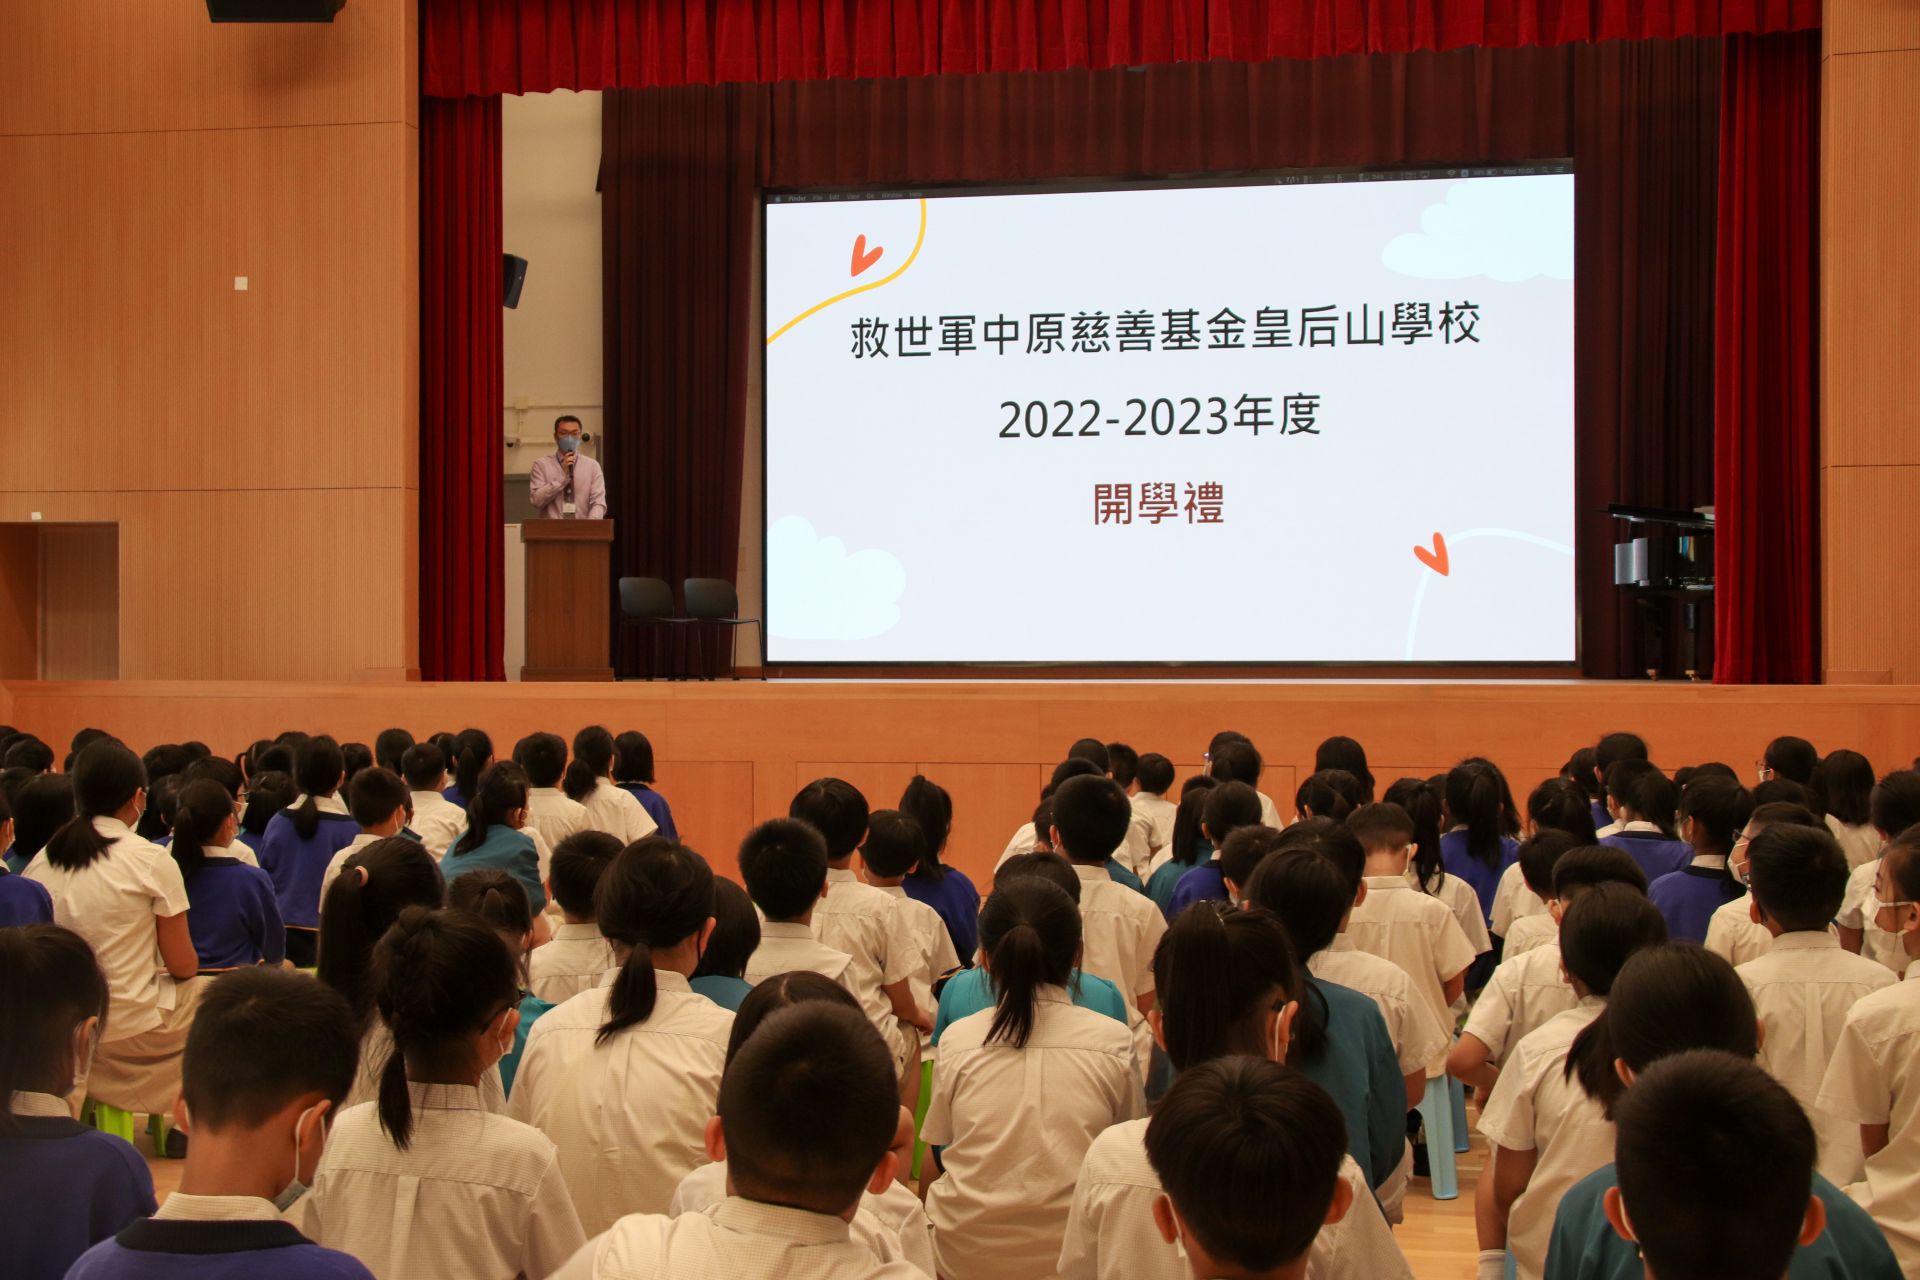 2022-2023年度開學日